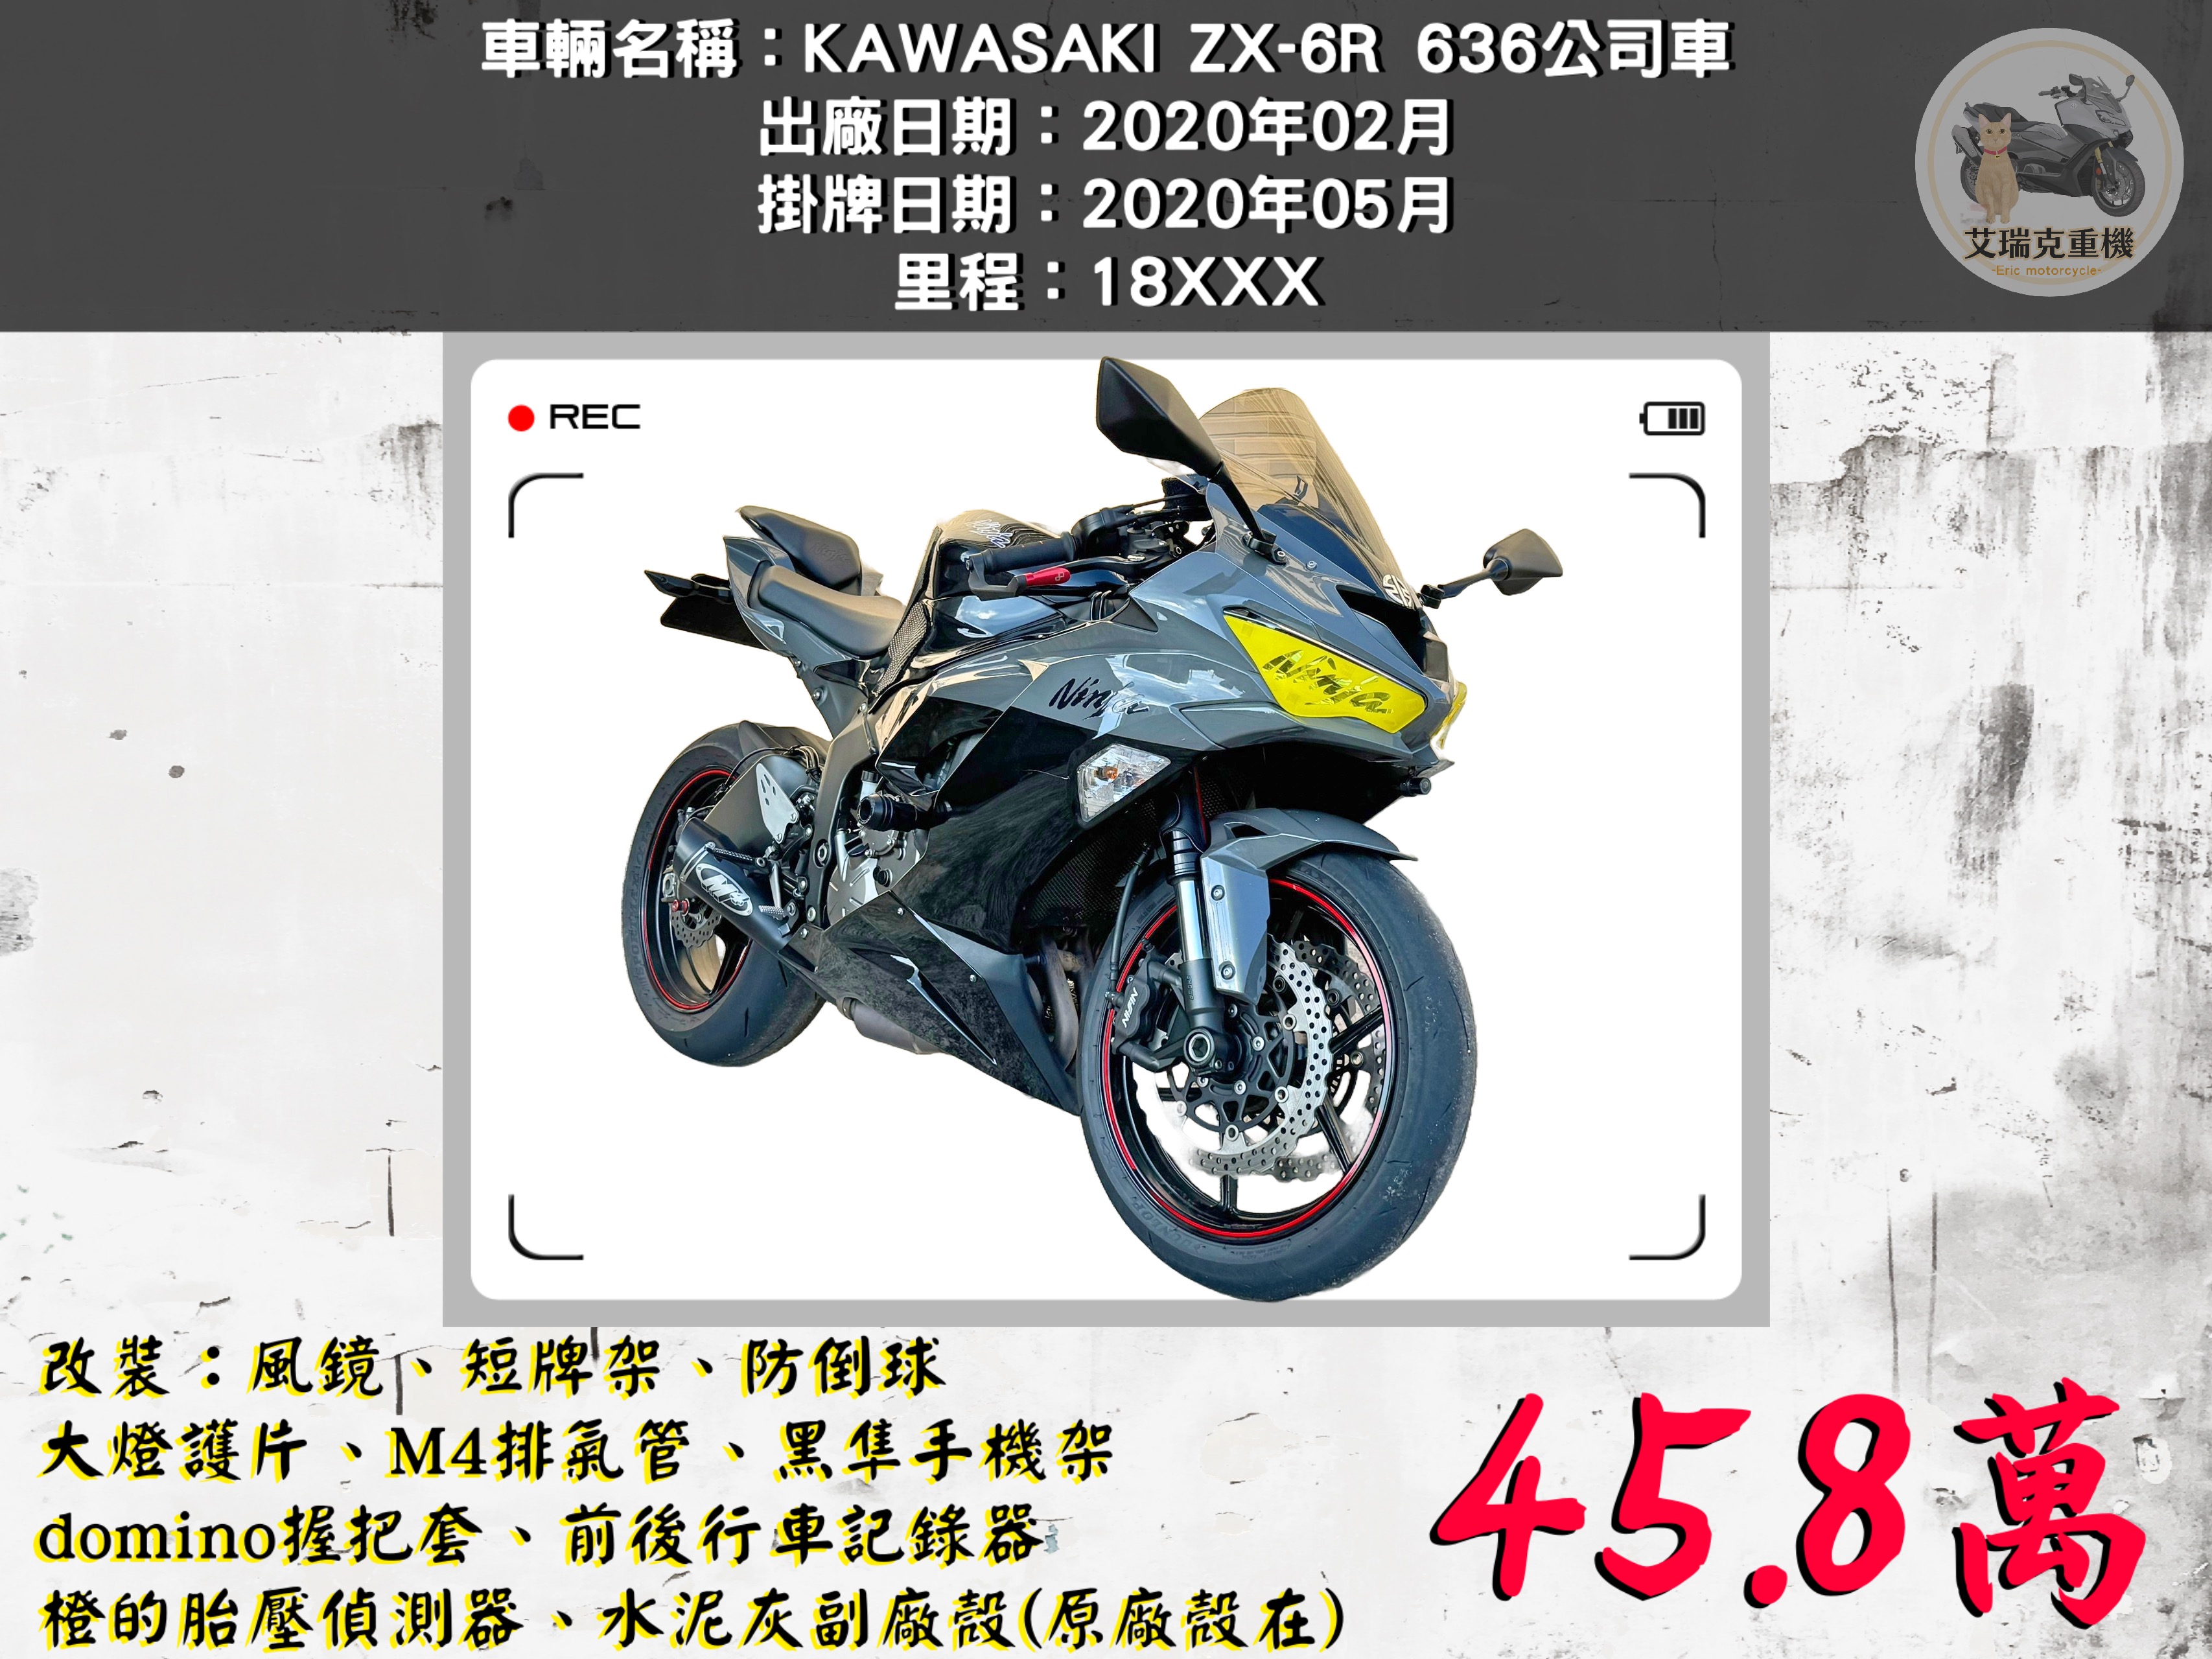 【艾瑞克重機】KAWASAKI NINJA ZX-6R - 「Webike-摩托車市」 KAWASAKI ZX-6R 636公司車